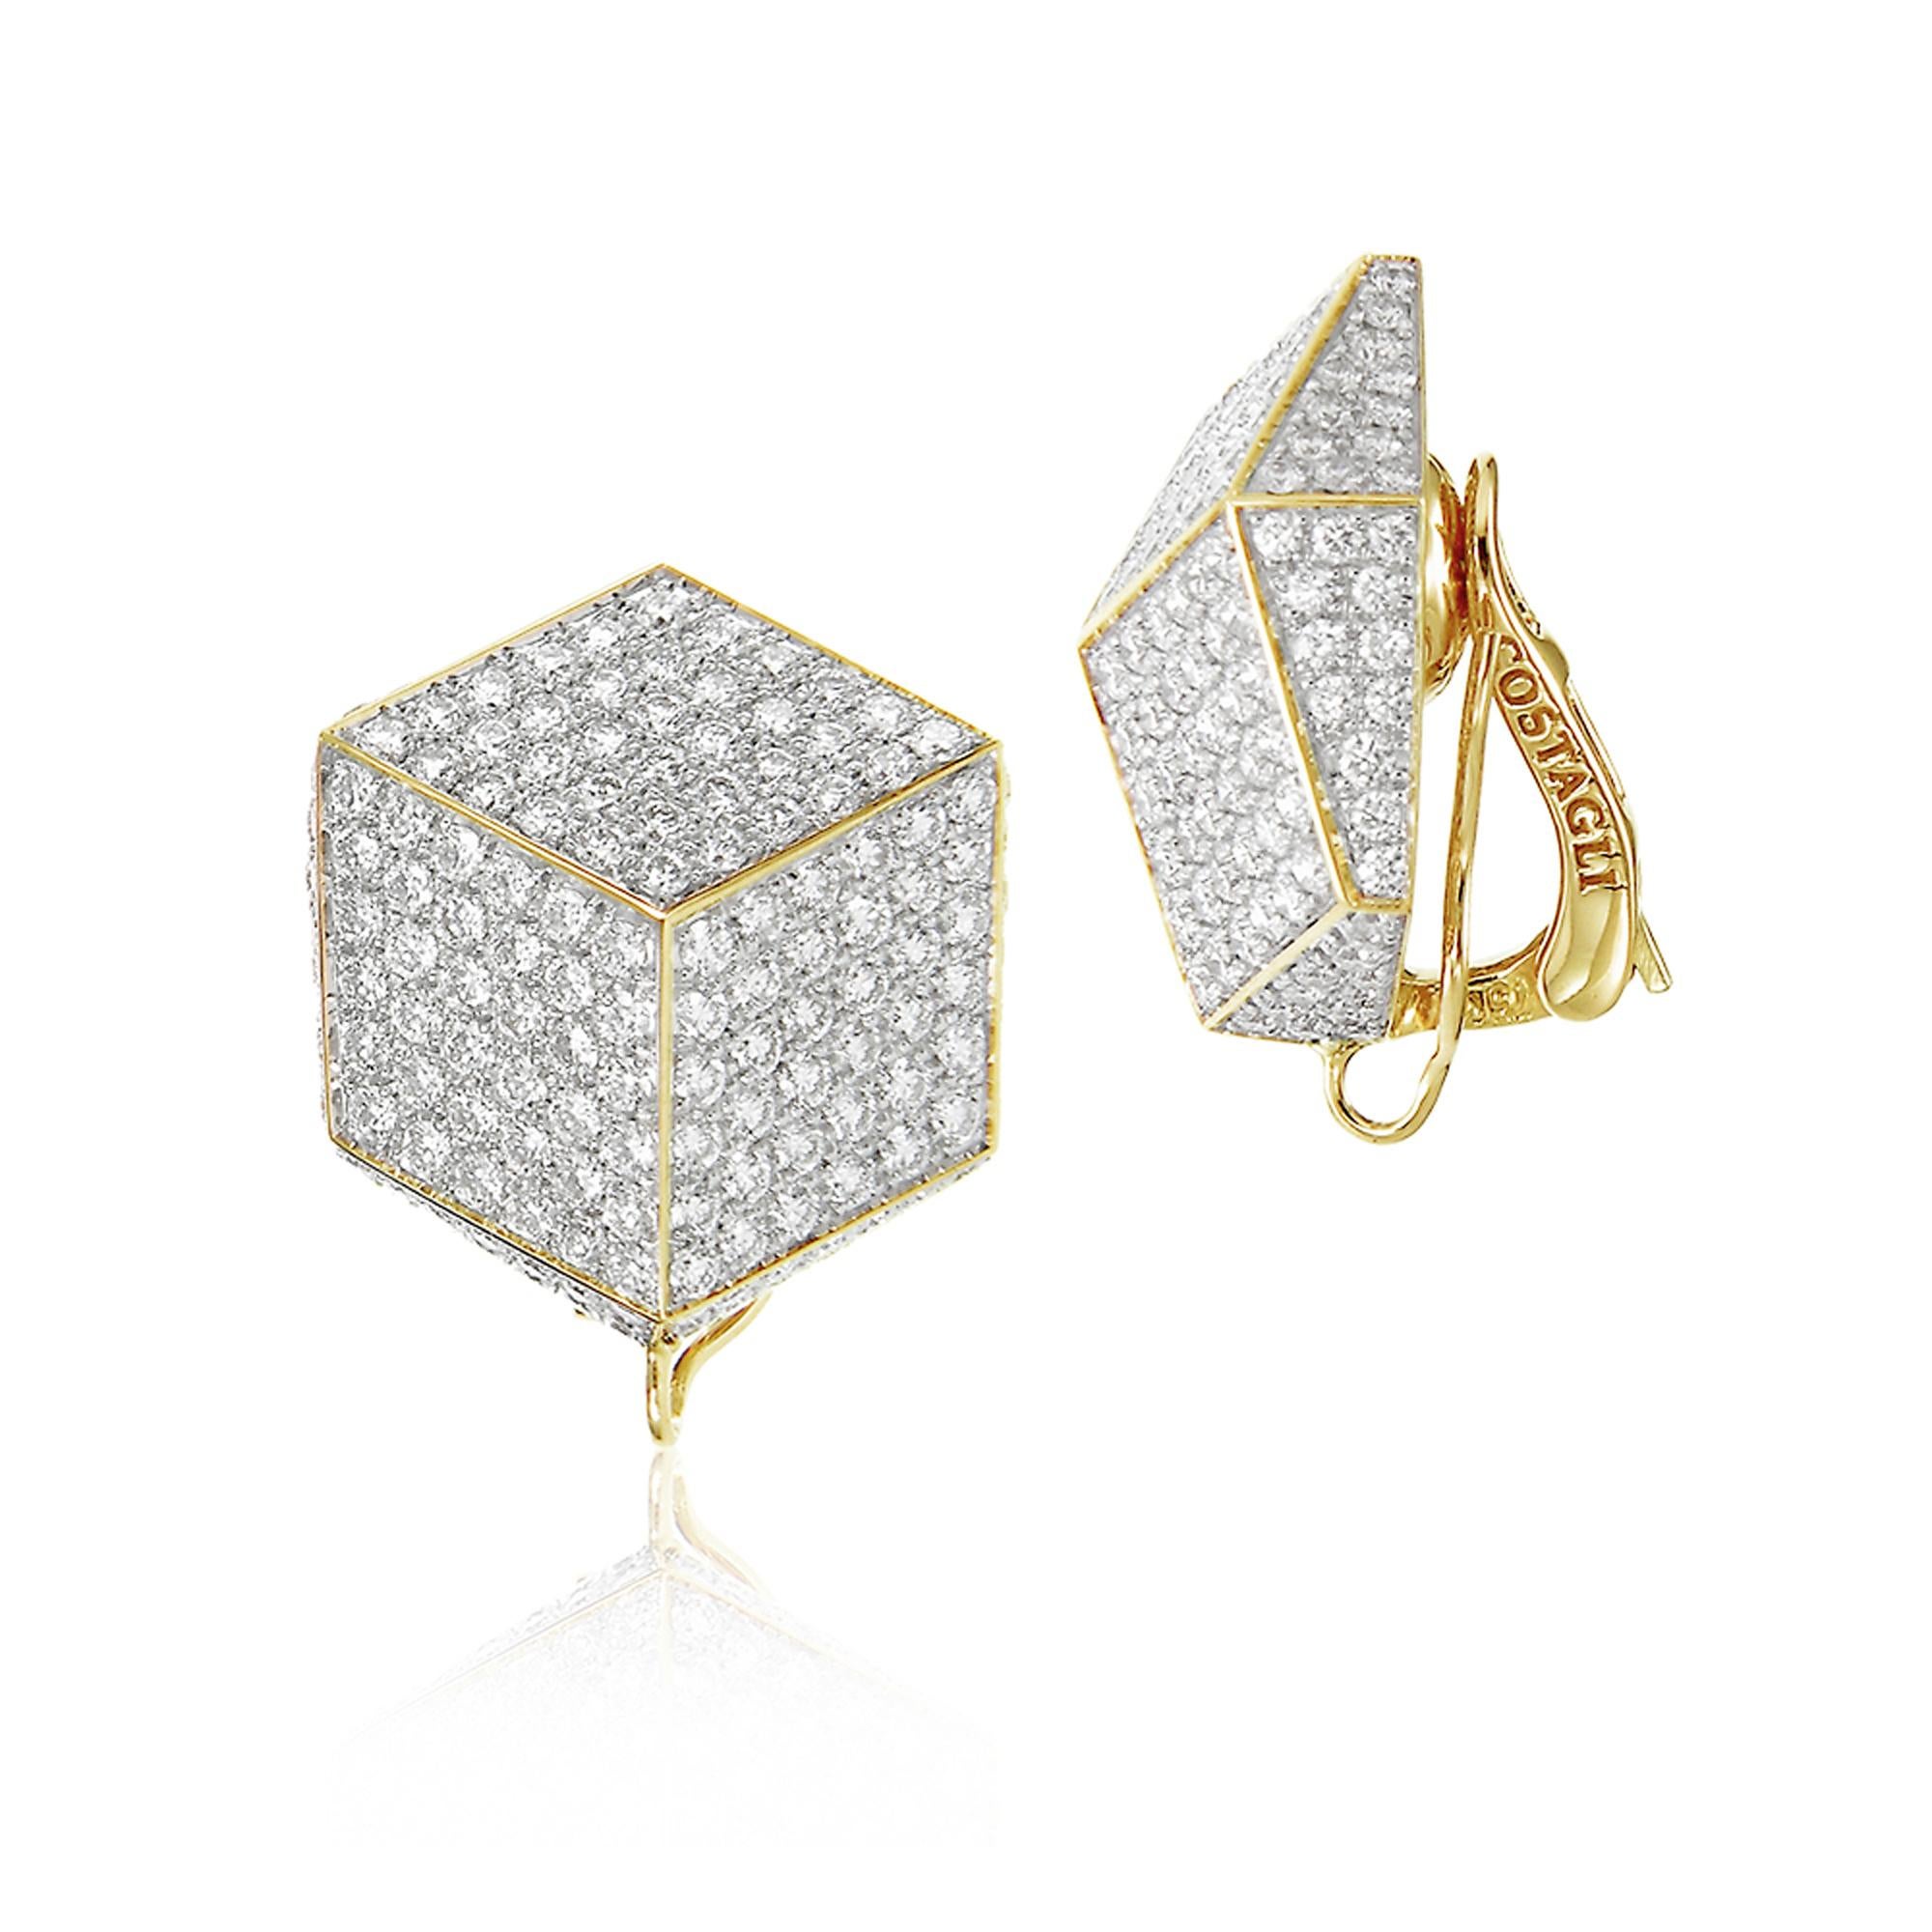 Contemporary Paolo Costagli 18 Karat Yellow Gold and Pave Diamonds Brillante Clip Earrings